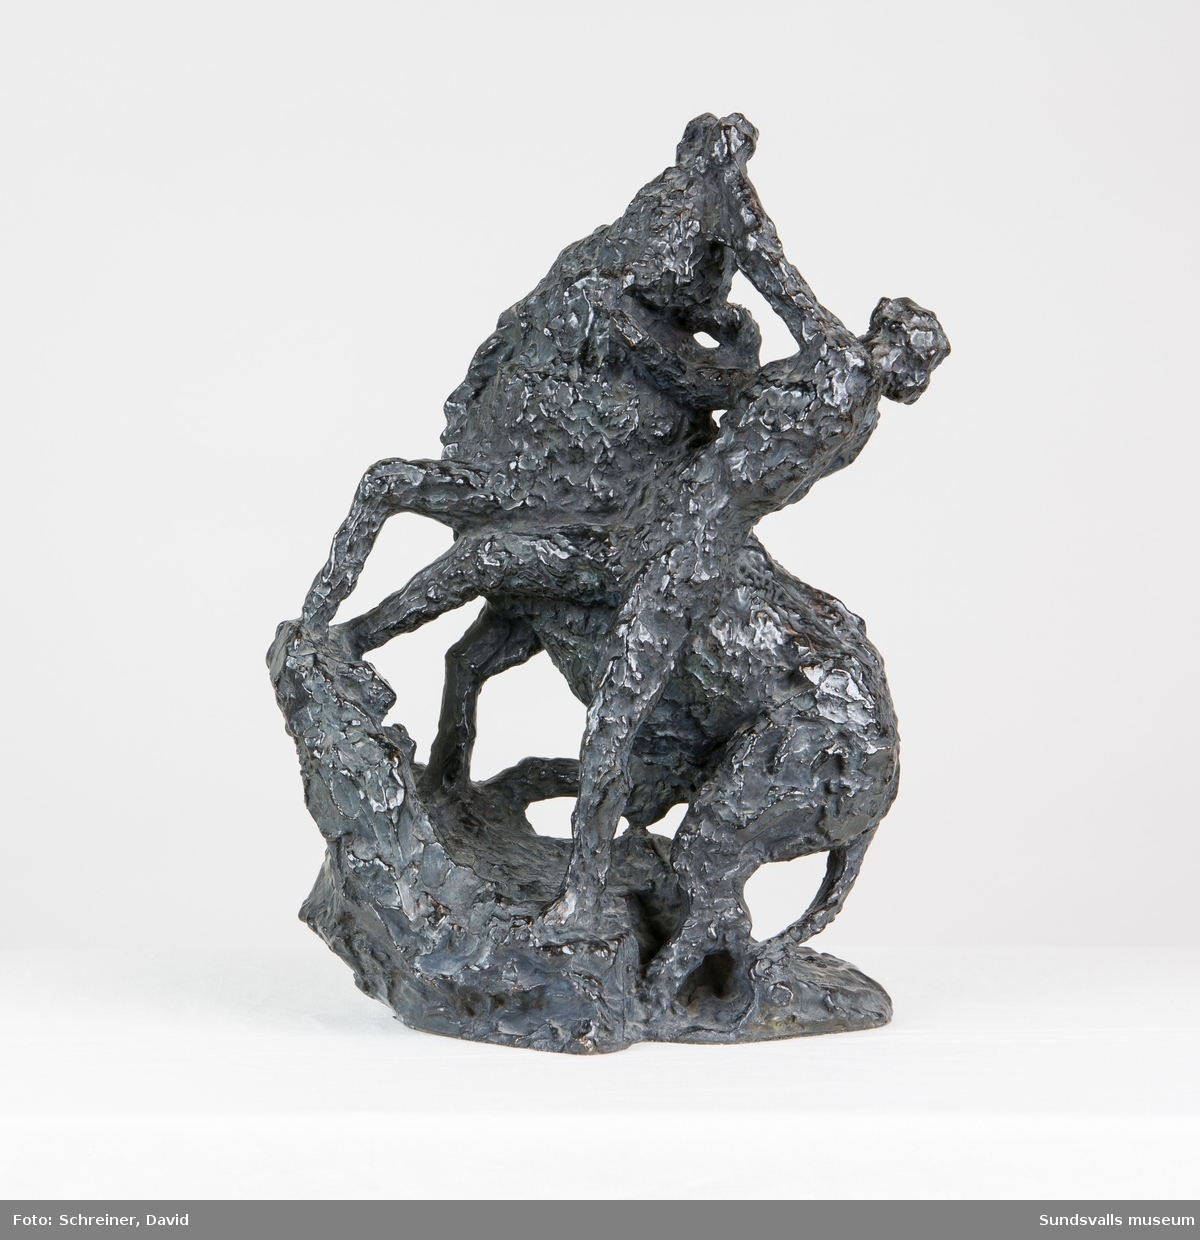 En skulptur i form av en man i kamp med en tjur där mannen i en kraftfull rörelse tvingar tjurens huvud uppåt och bakåt.